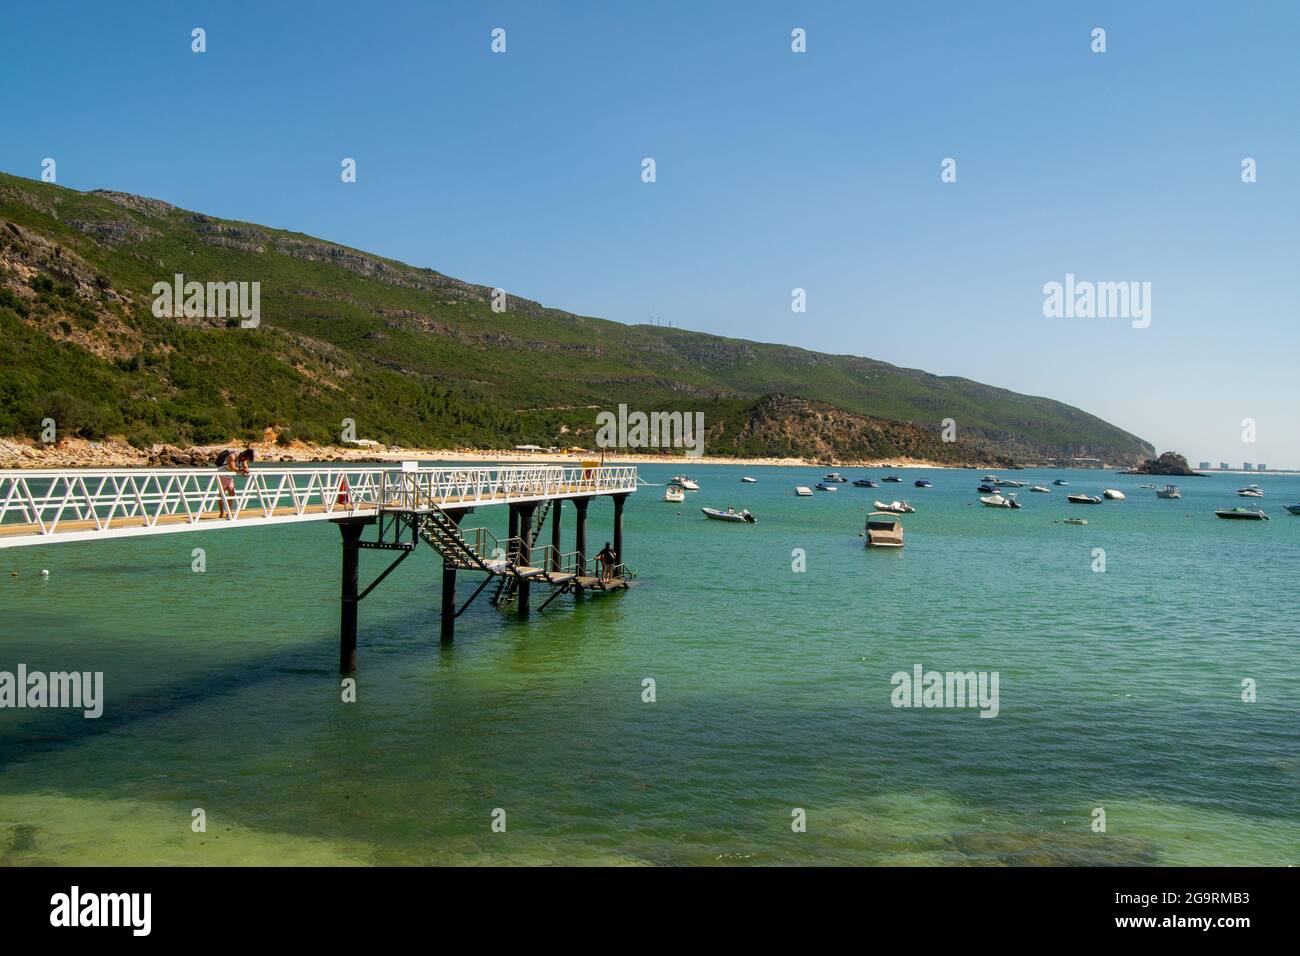 Puente de playa Portinho da Arrábida en Setúbal, Portugal. Puente de acero sobre el océano en el puerto de barcos. Arrábida parque natural. Foto de stock